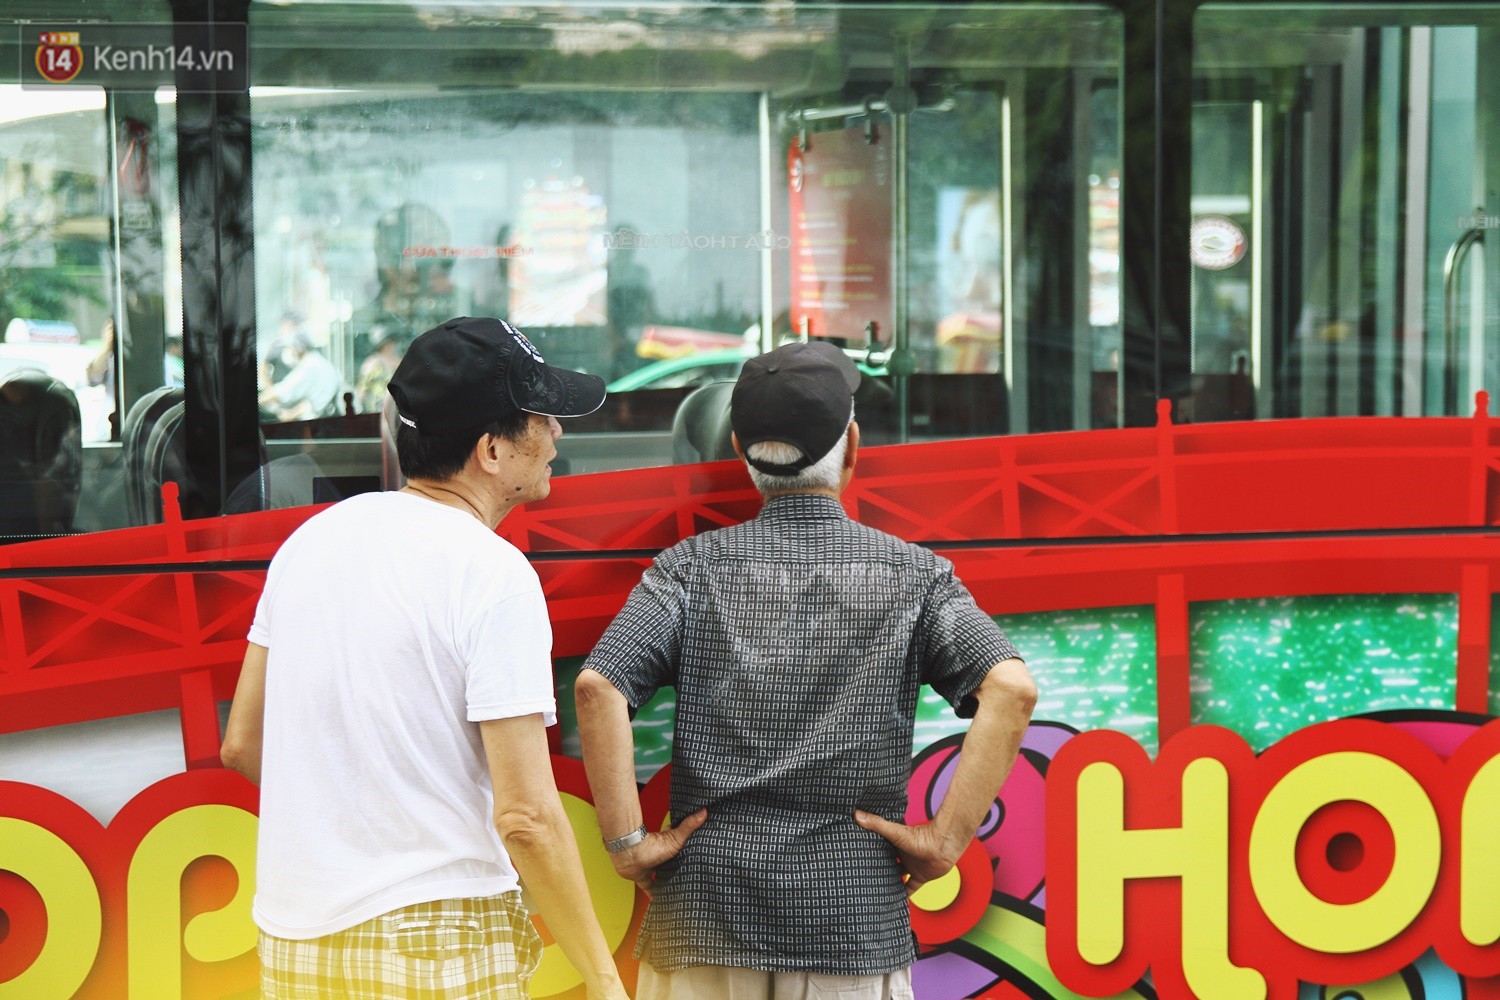 Trải nghiệm xe buýt 2 tầng mui trần ngắm Thủ đô Hà Nội từ trên cao: 300.000 đồng cho một vé liệu có đáng? - Ảnh 2.